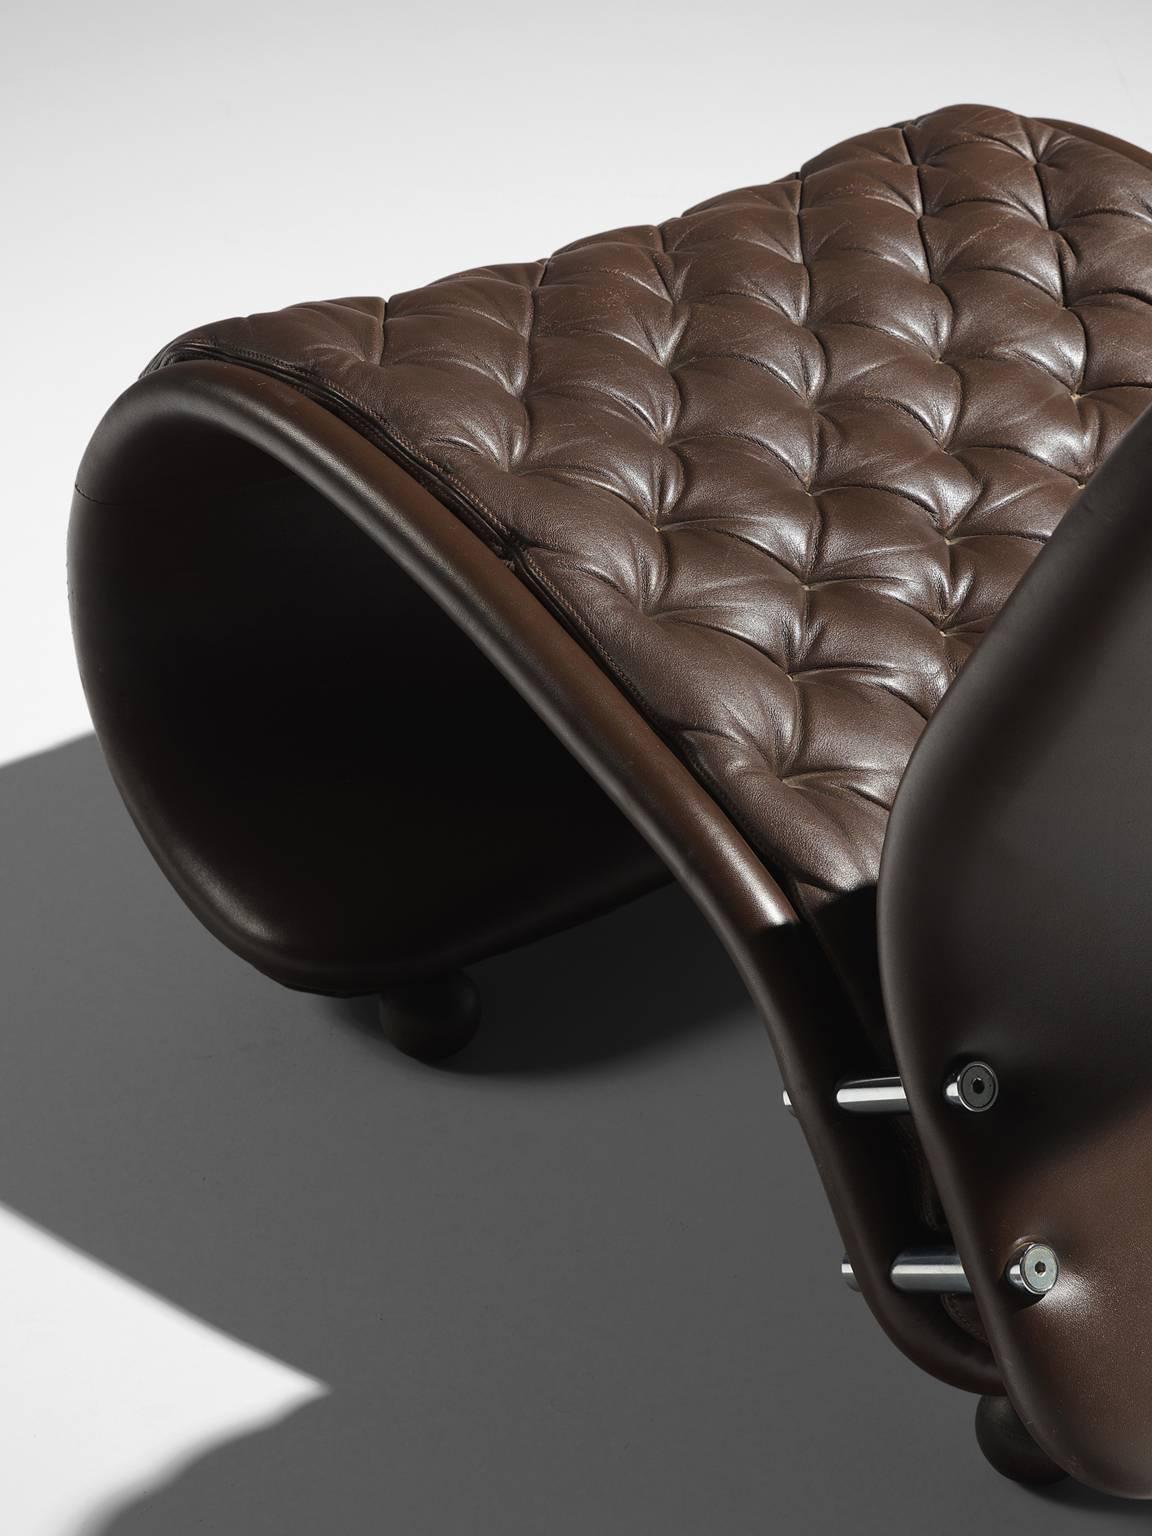 Mid-Century Modern Verner Panton for Fritz Hansen Model G Lounge Chair